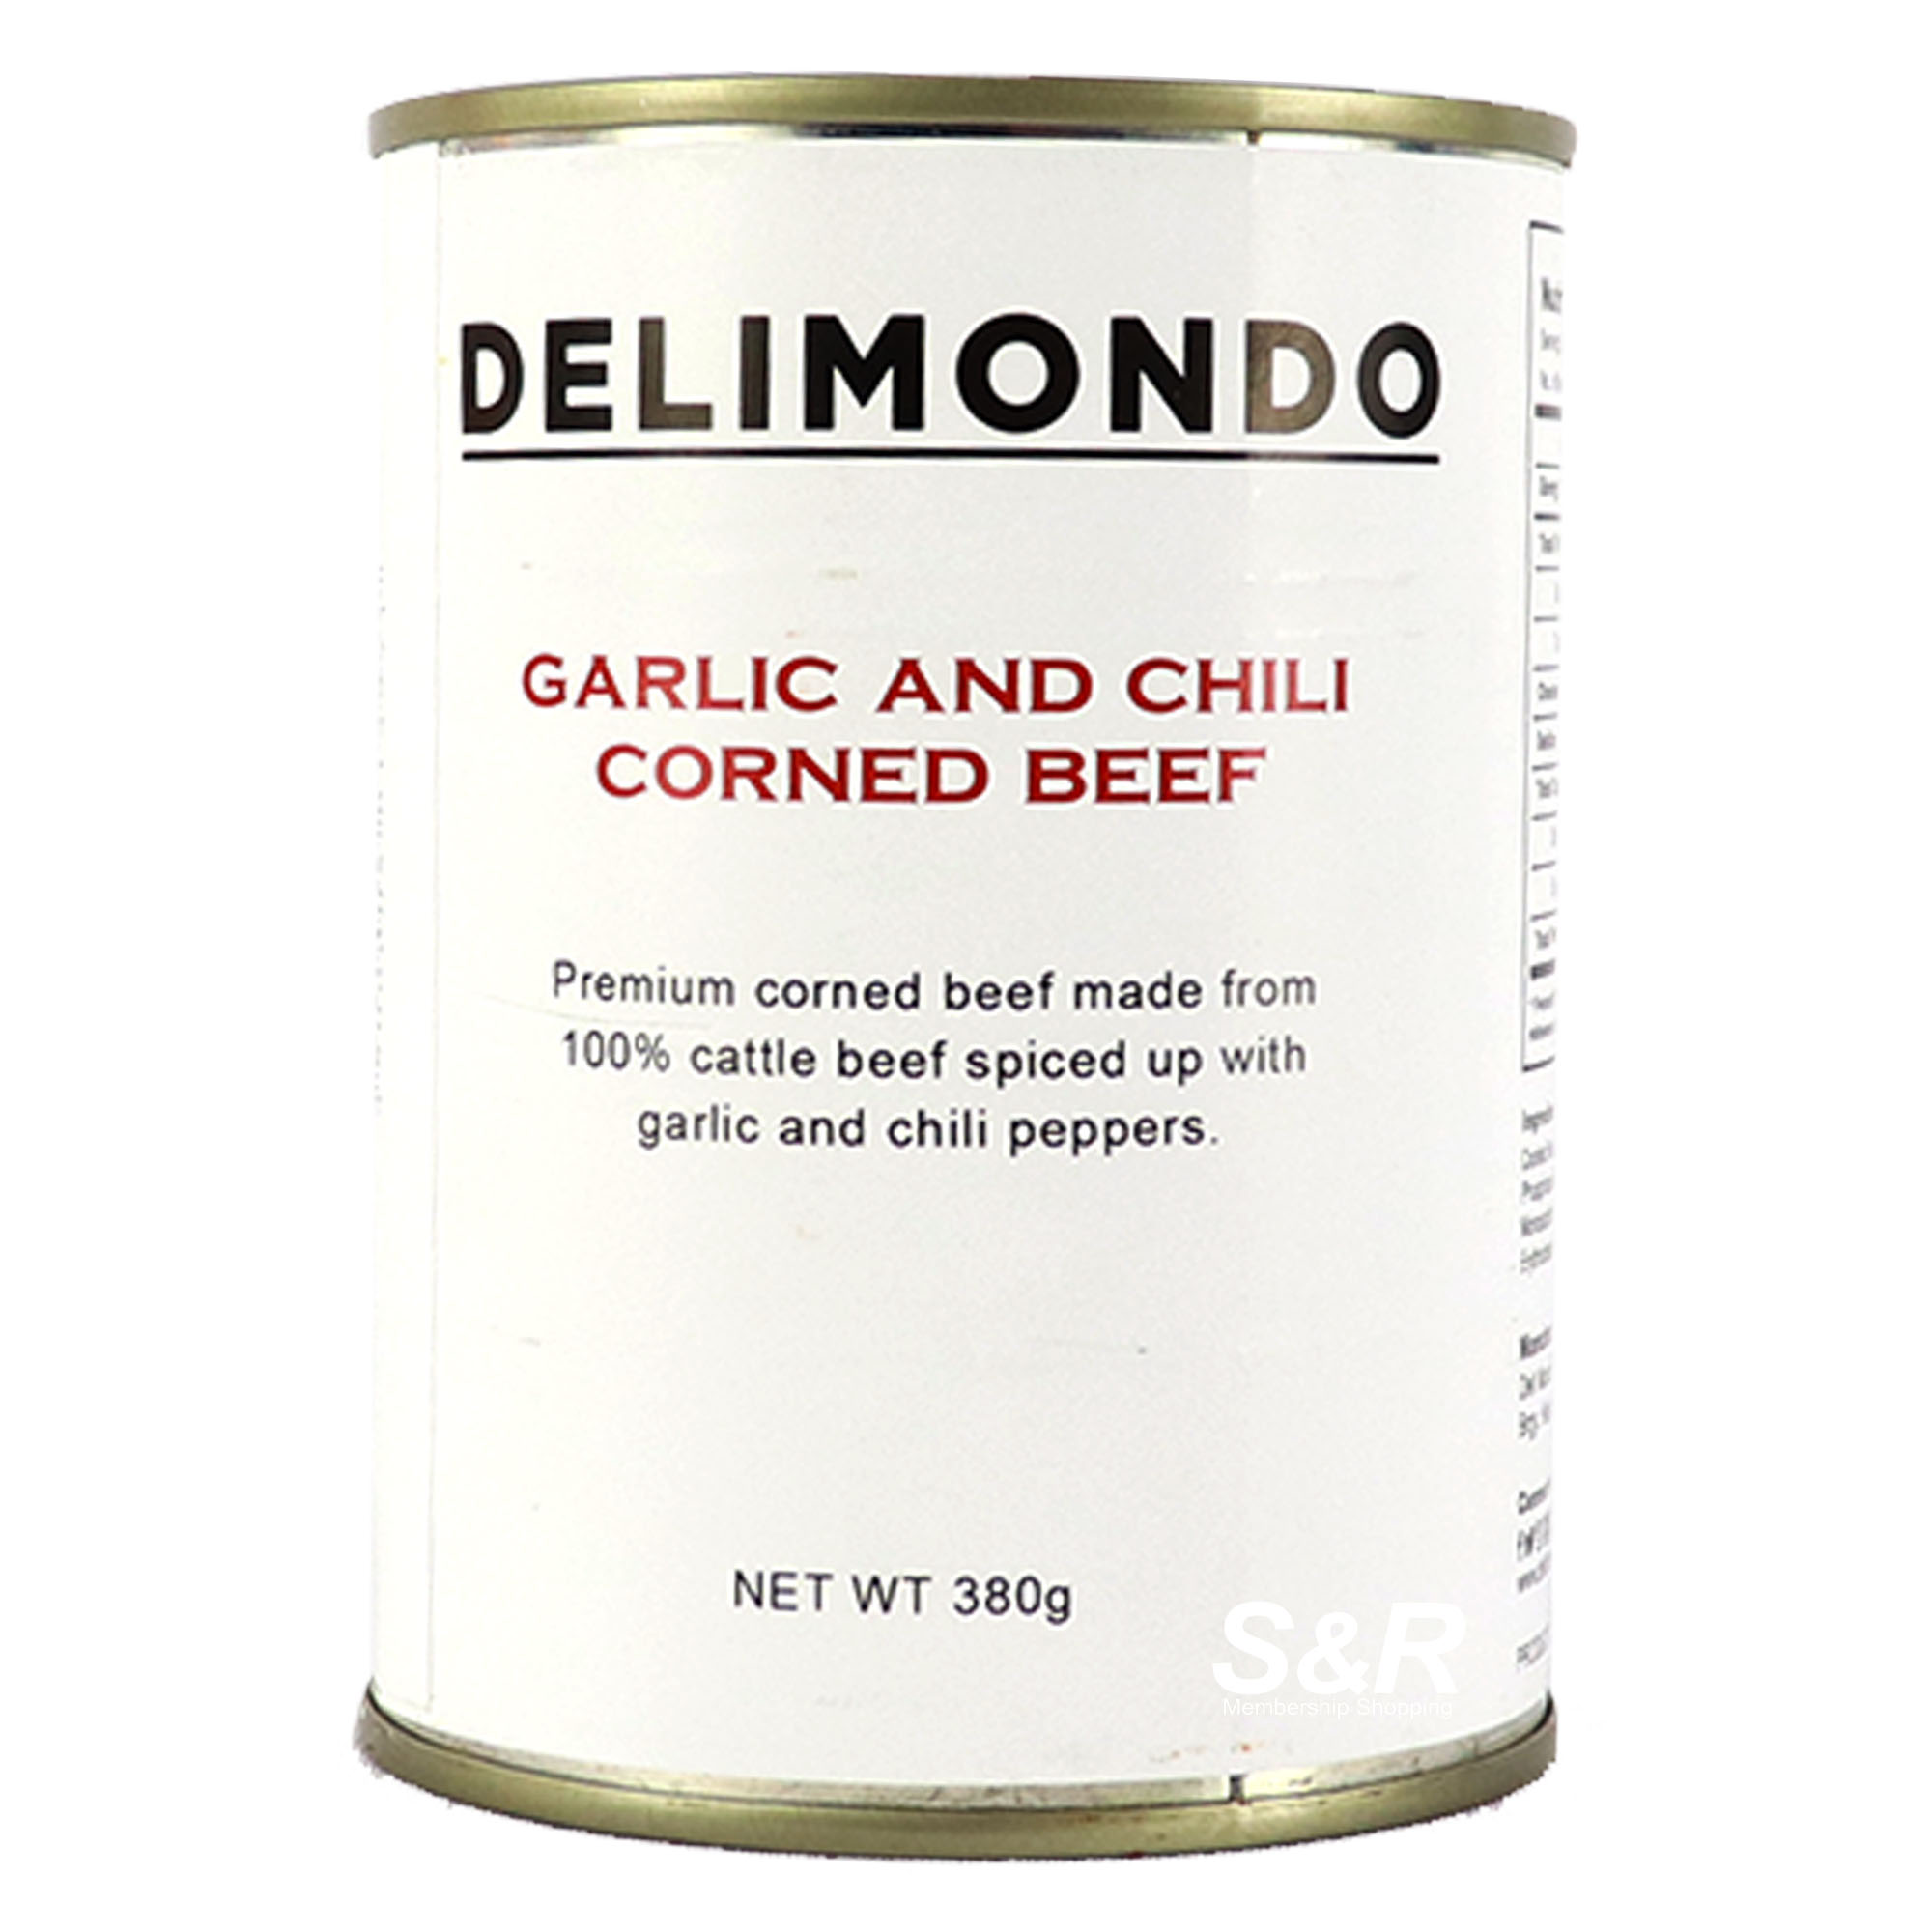 Delimondo Garlic and Chili Corned Beef 380g